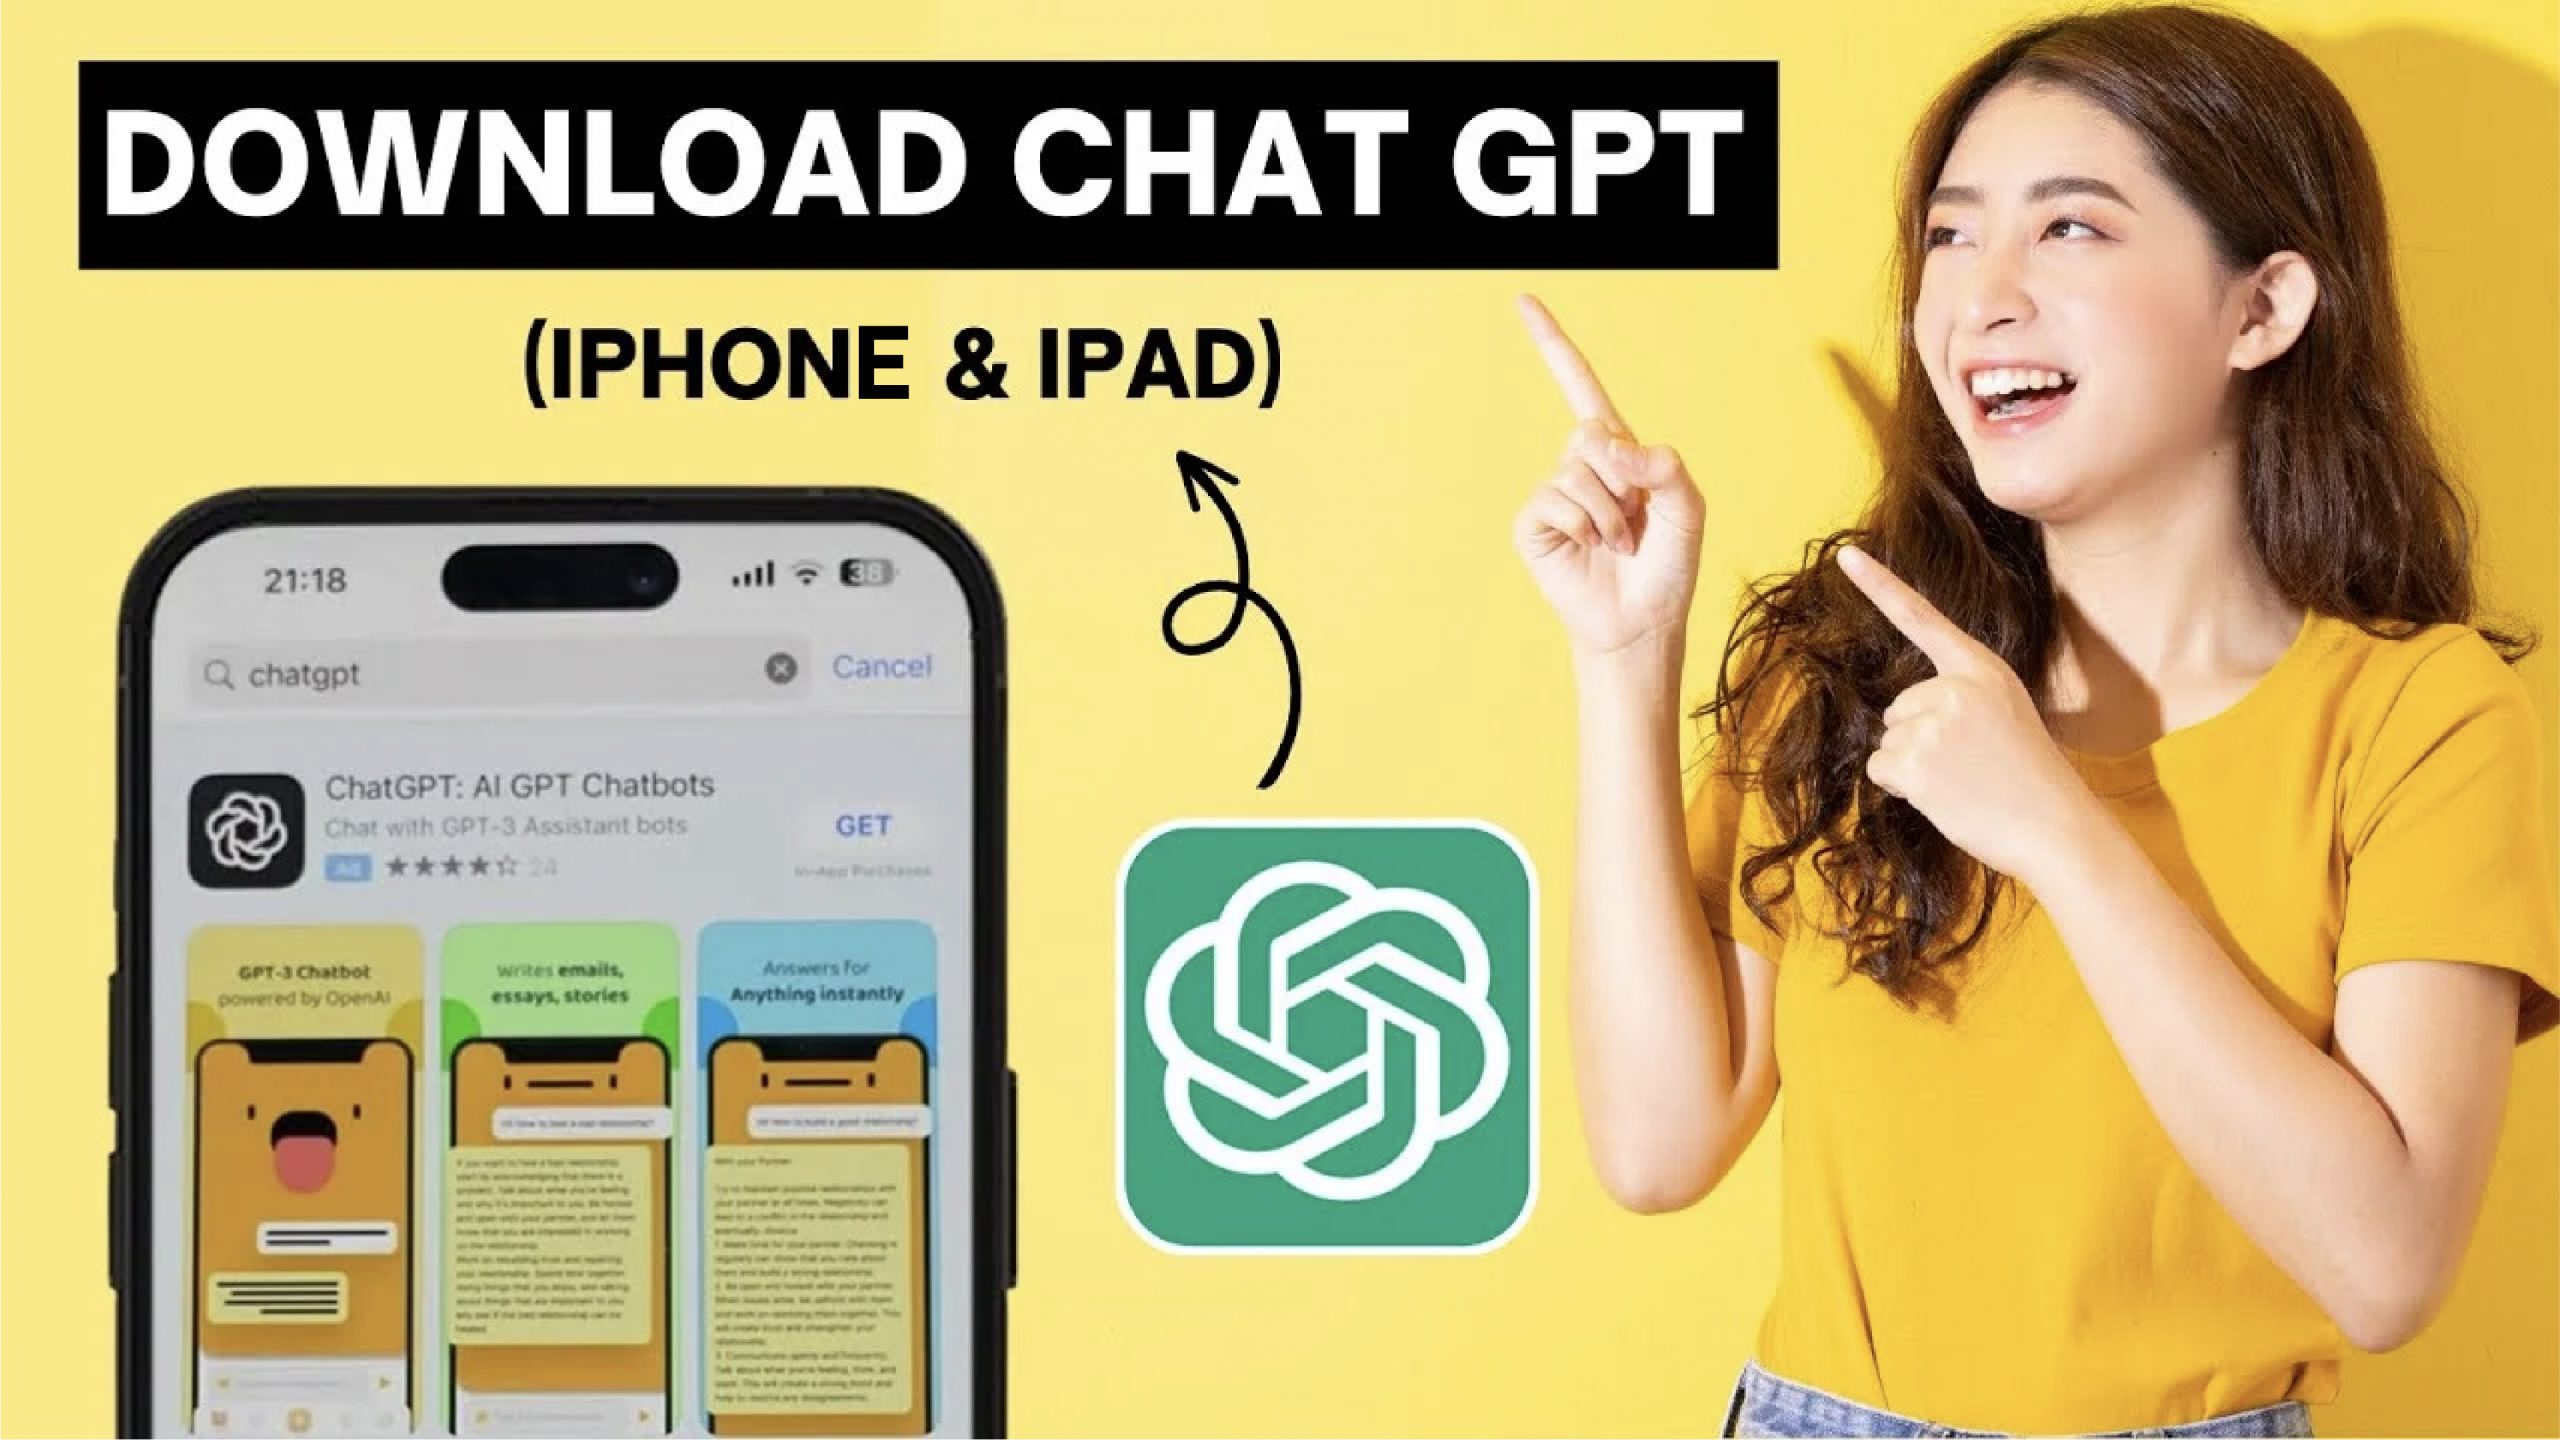 Chat GPT là gì? Cách sử dụng Chat GPT miễn phí tại Việt Nam